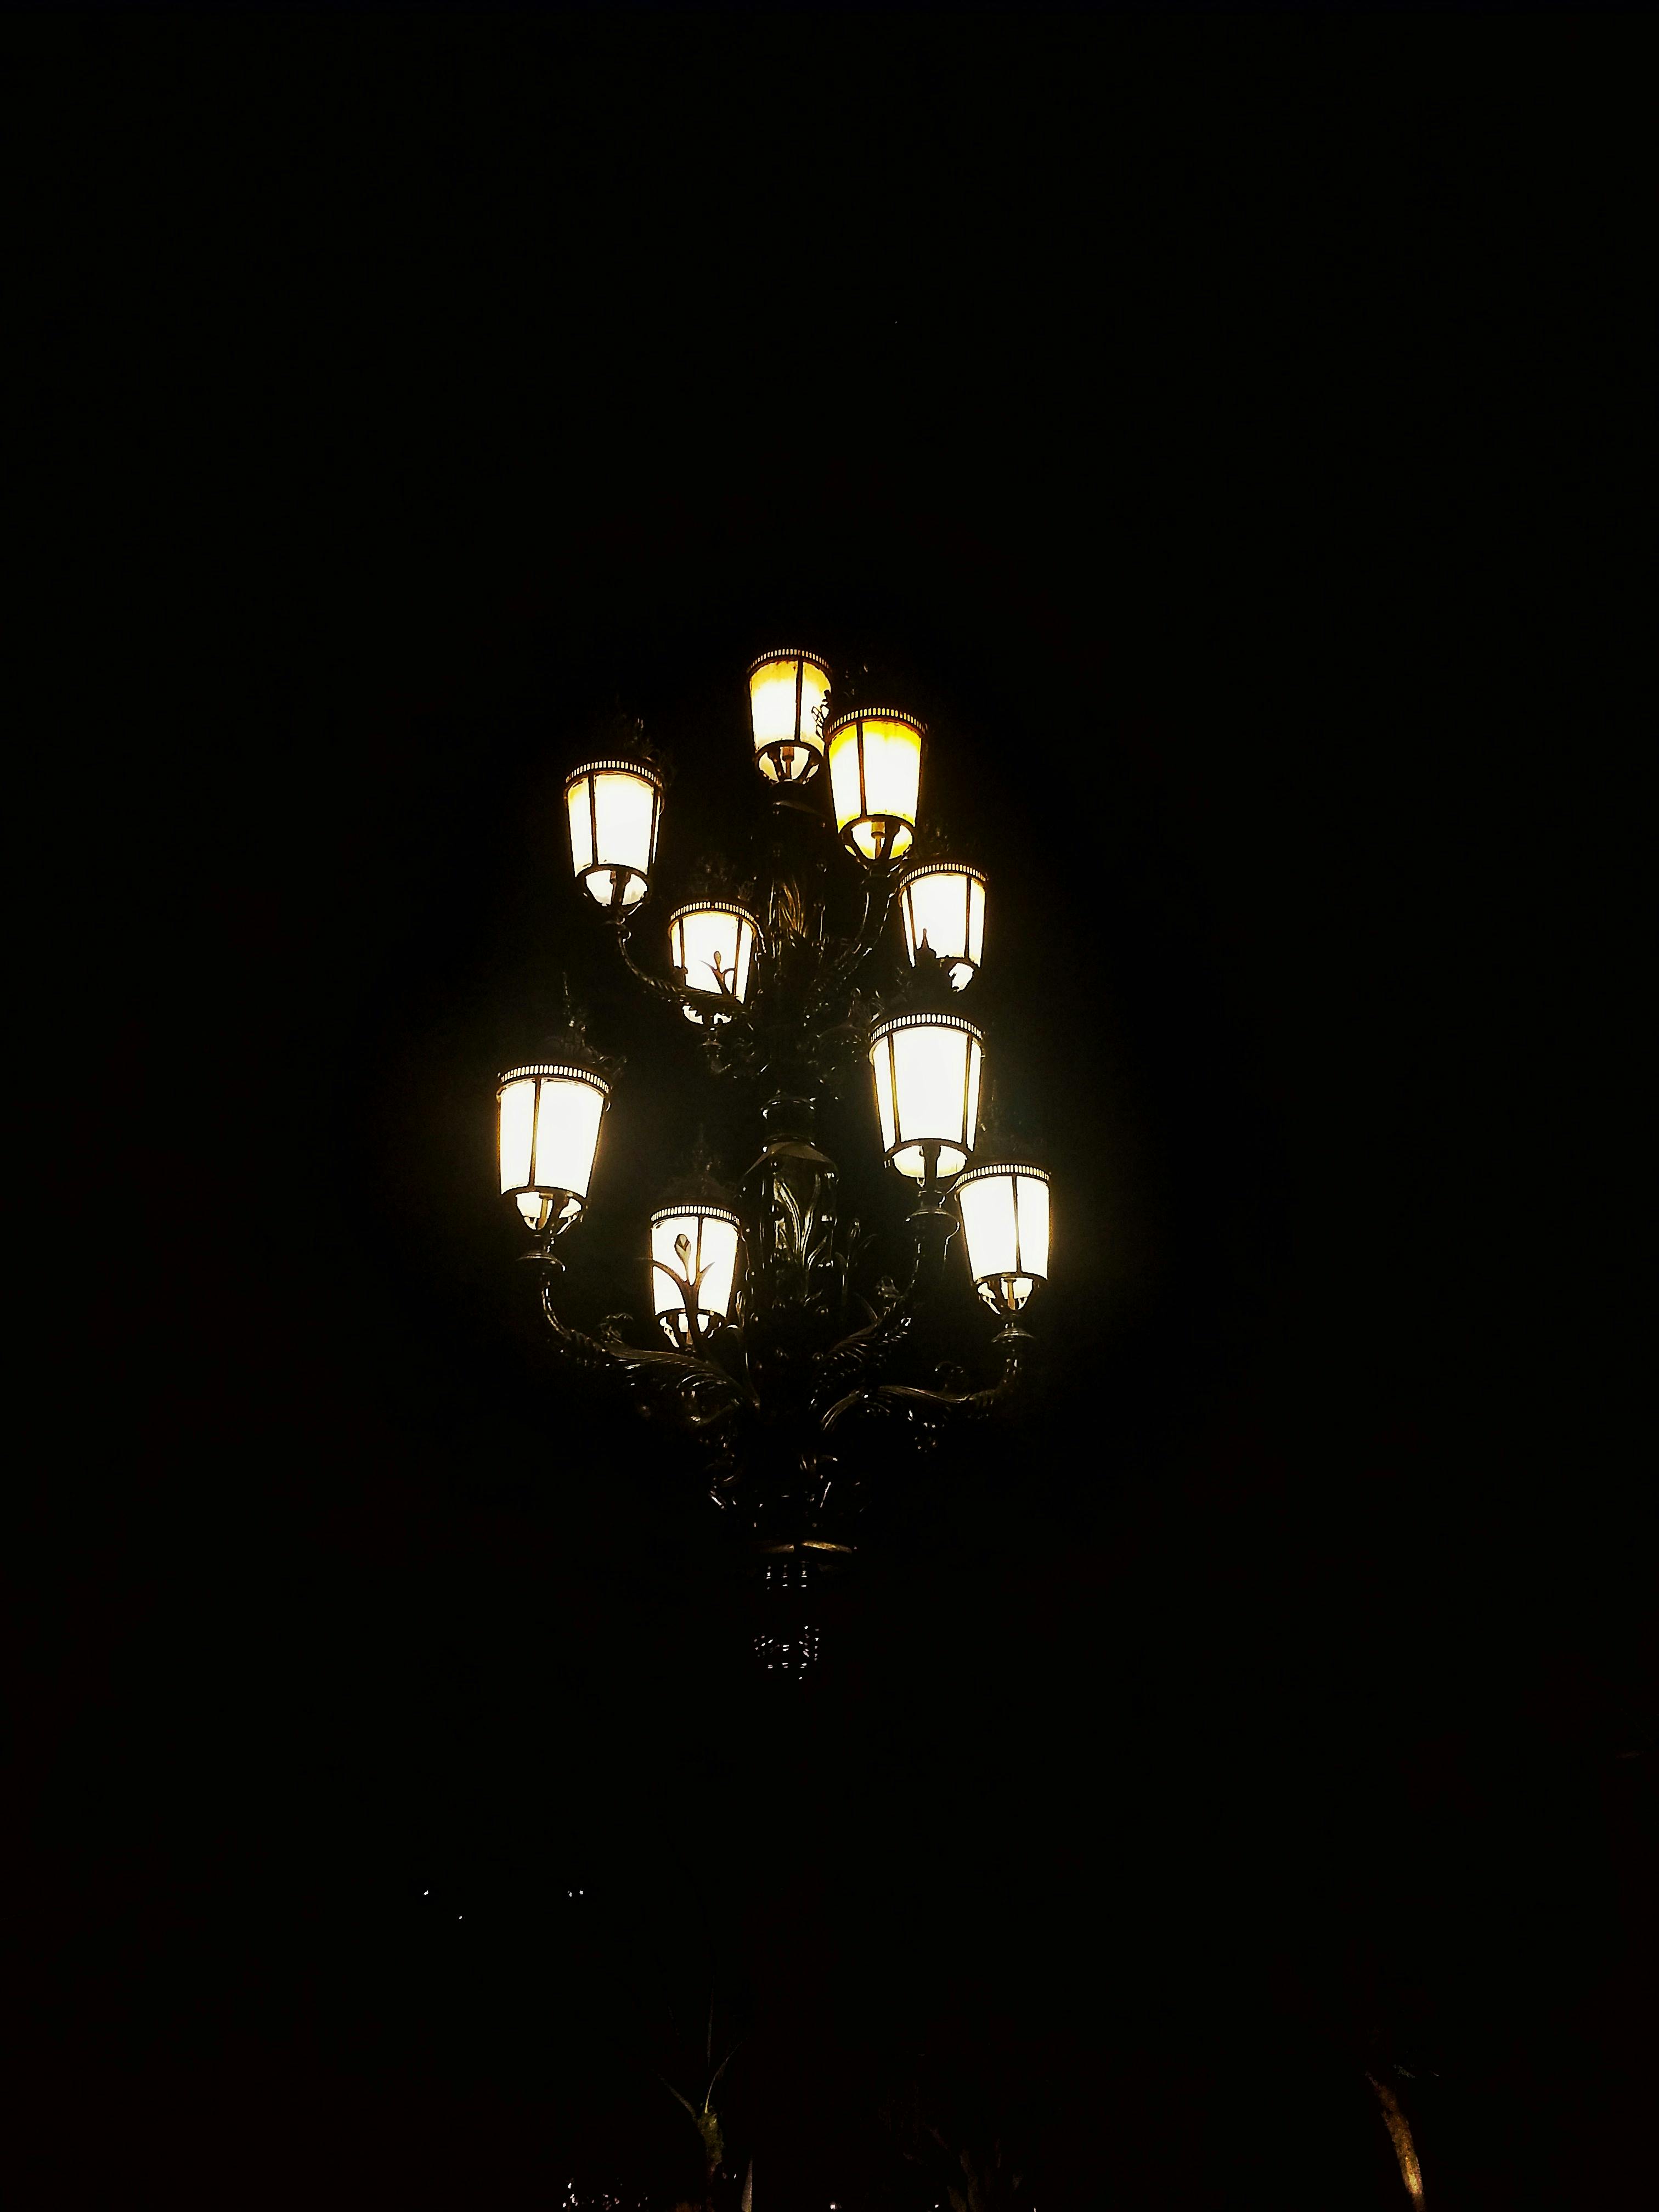 Free stock photo of dark night, lamp, lamp post